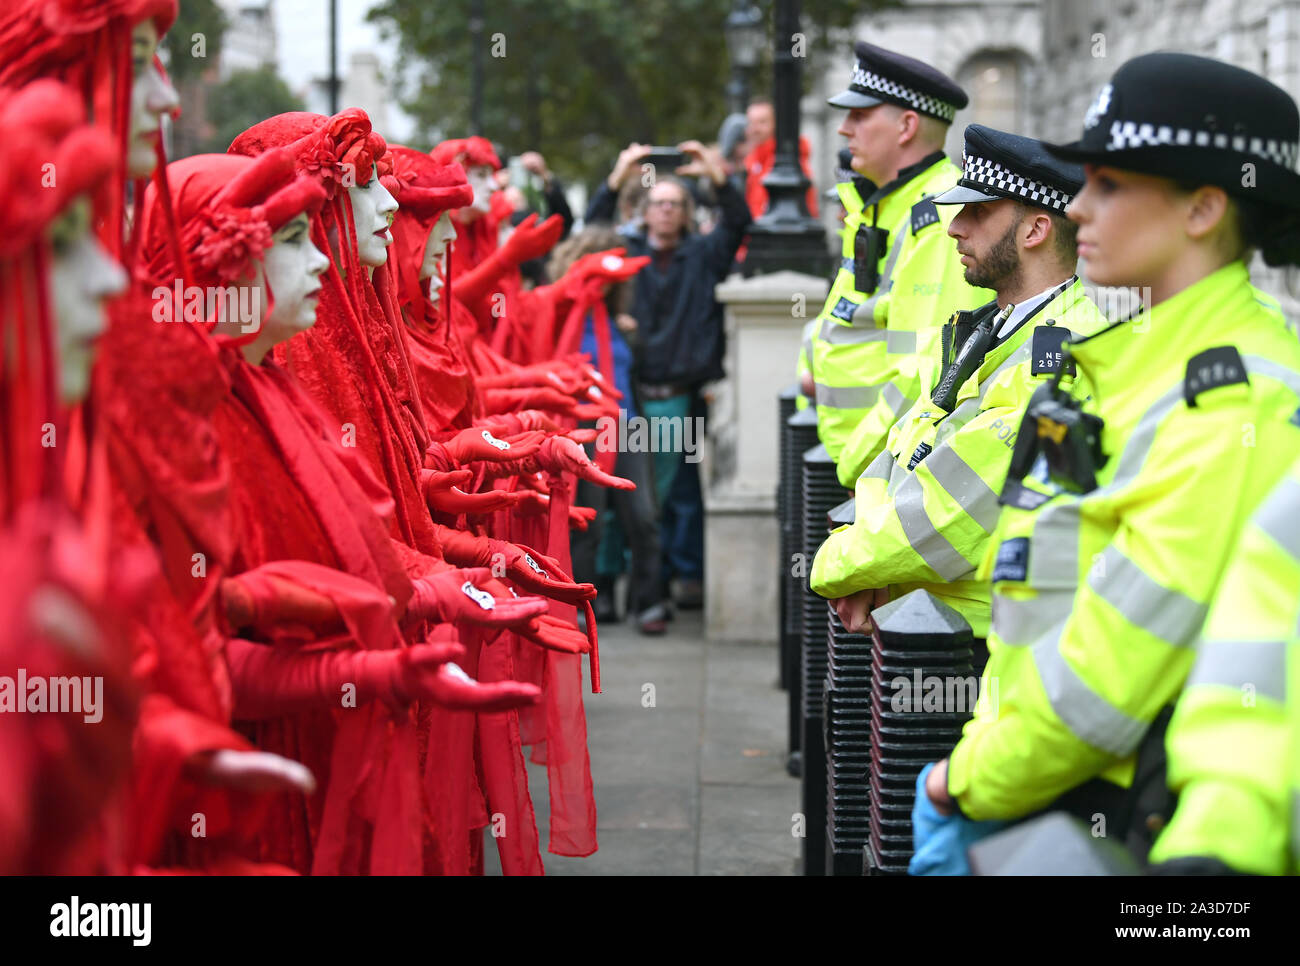 Les manifestants, surnommés les rebelles Rouge, à l'extérieur de l'armoire Bureau sur Whitehall, au cours d'une rébellion d'Extinction (XR) Manifestation à Westminster, Londres. Banque D'Images